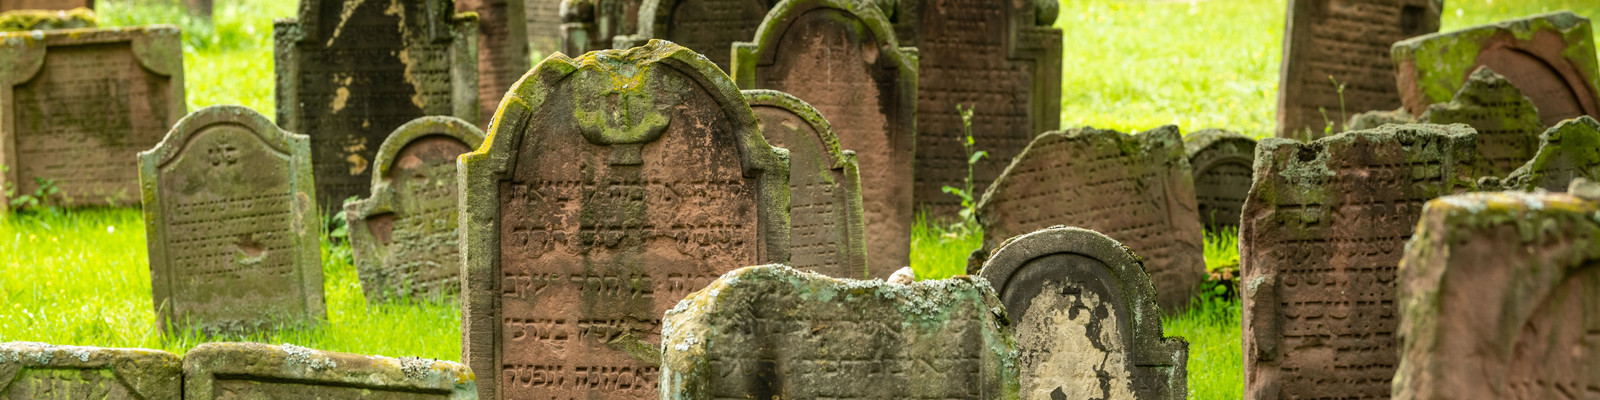 Grabsteine auf dem jüdischen Friedhof in Worms